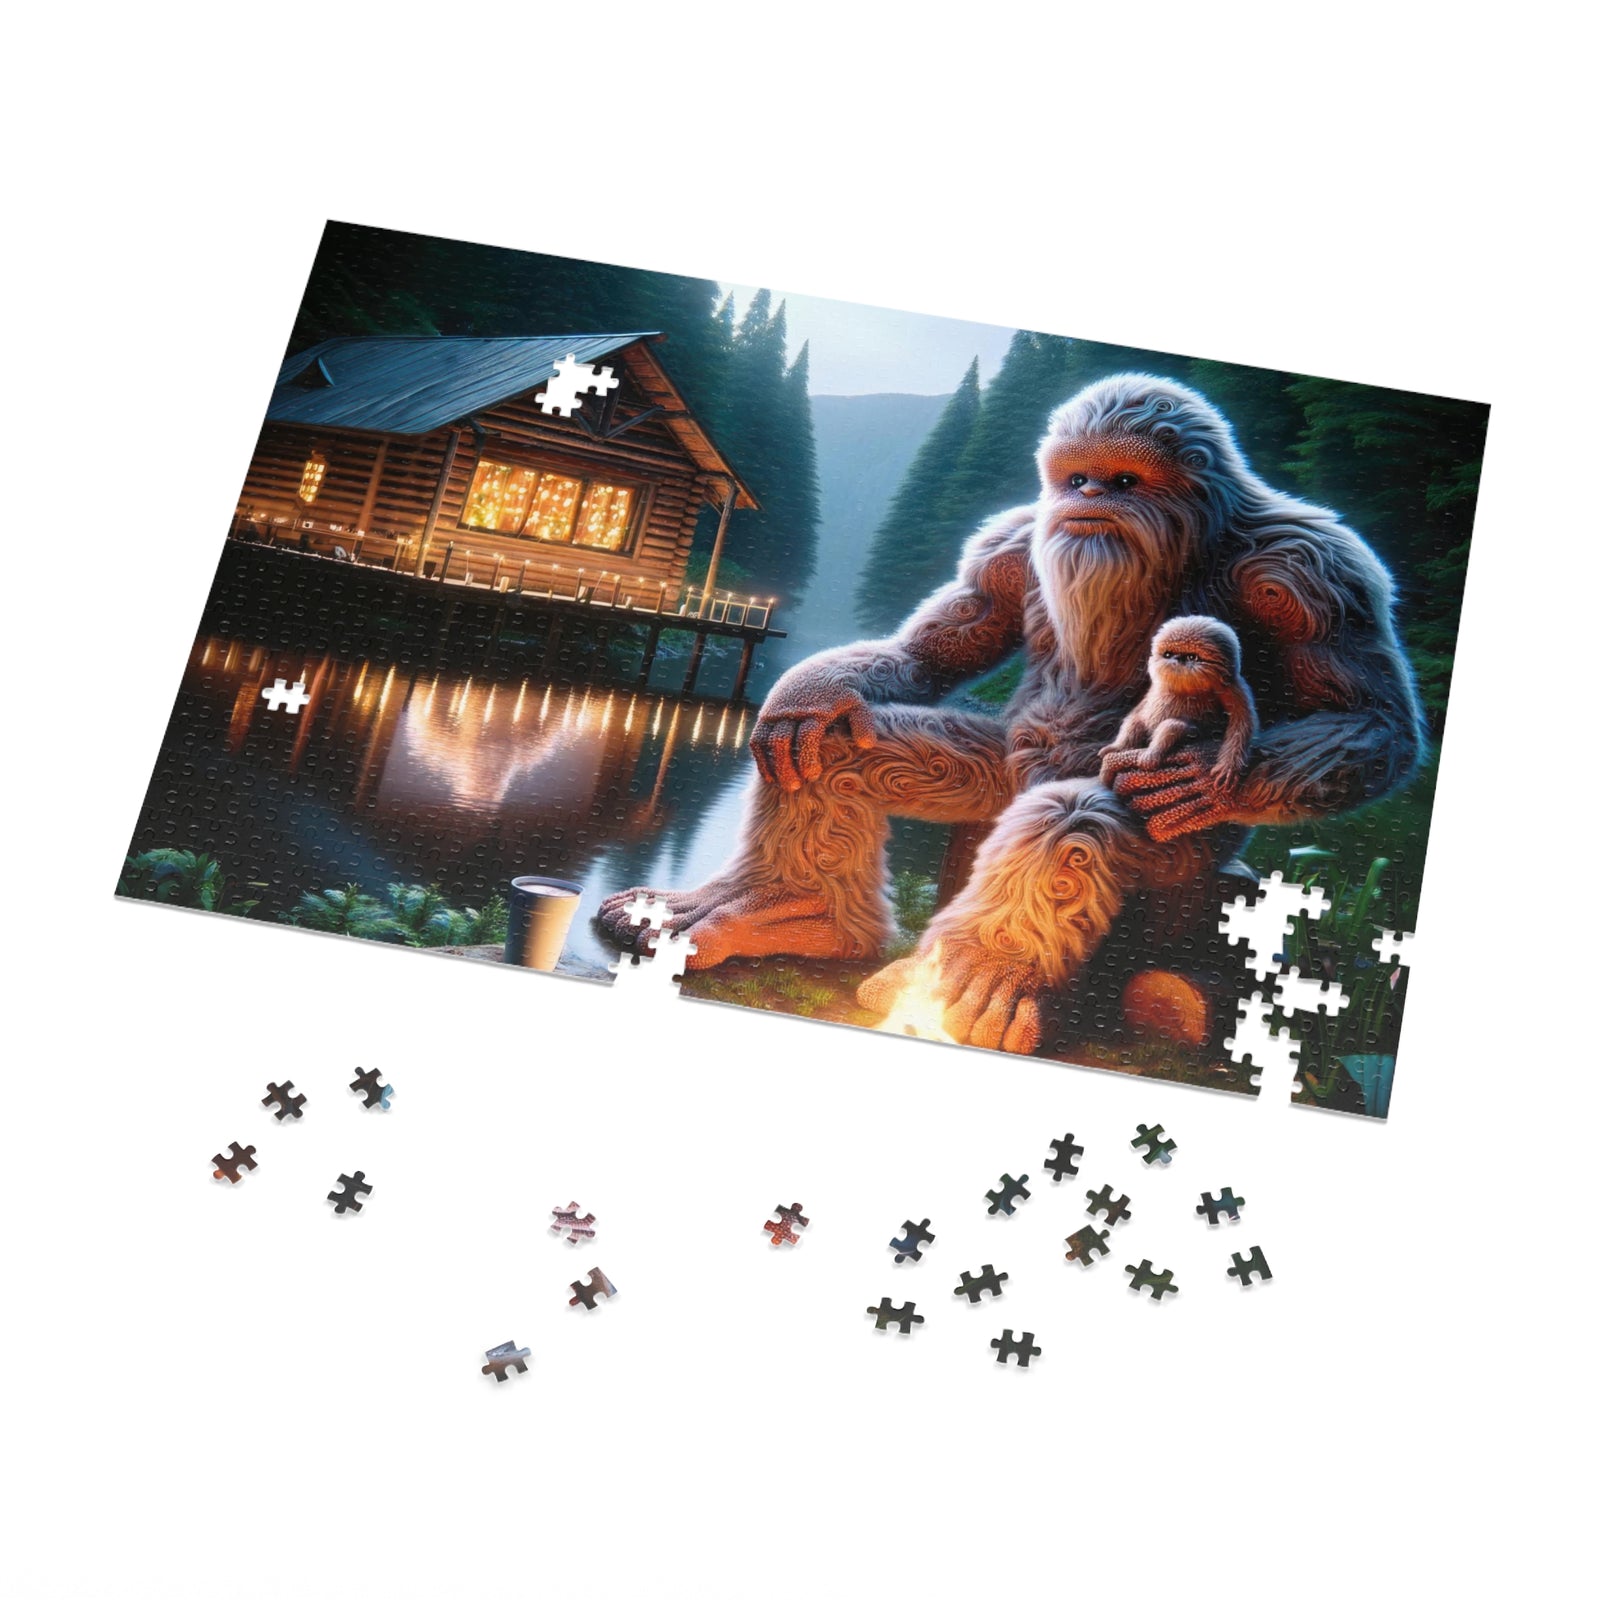 Twilight Tales Jigsaw Puzzle